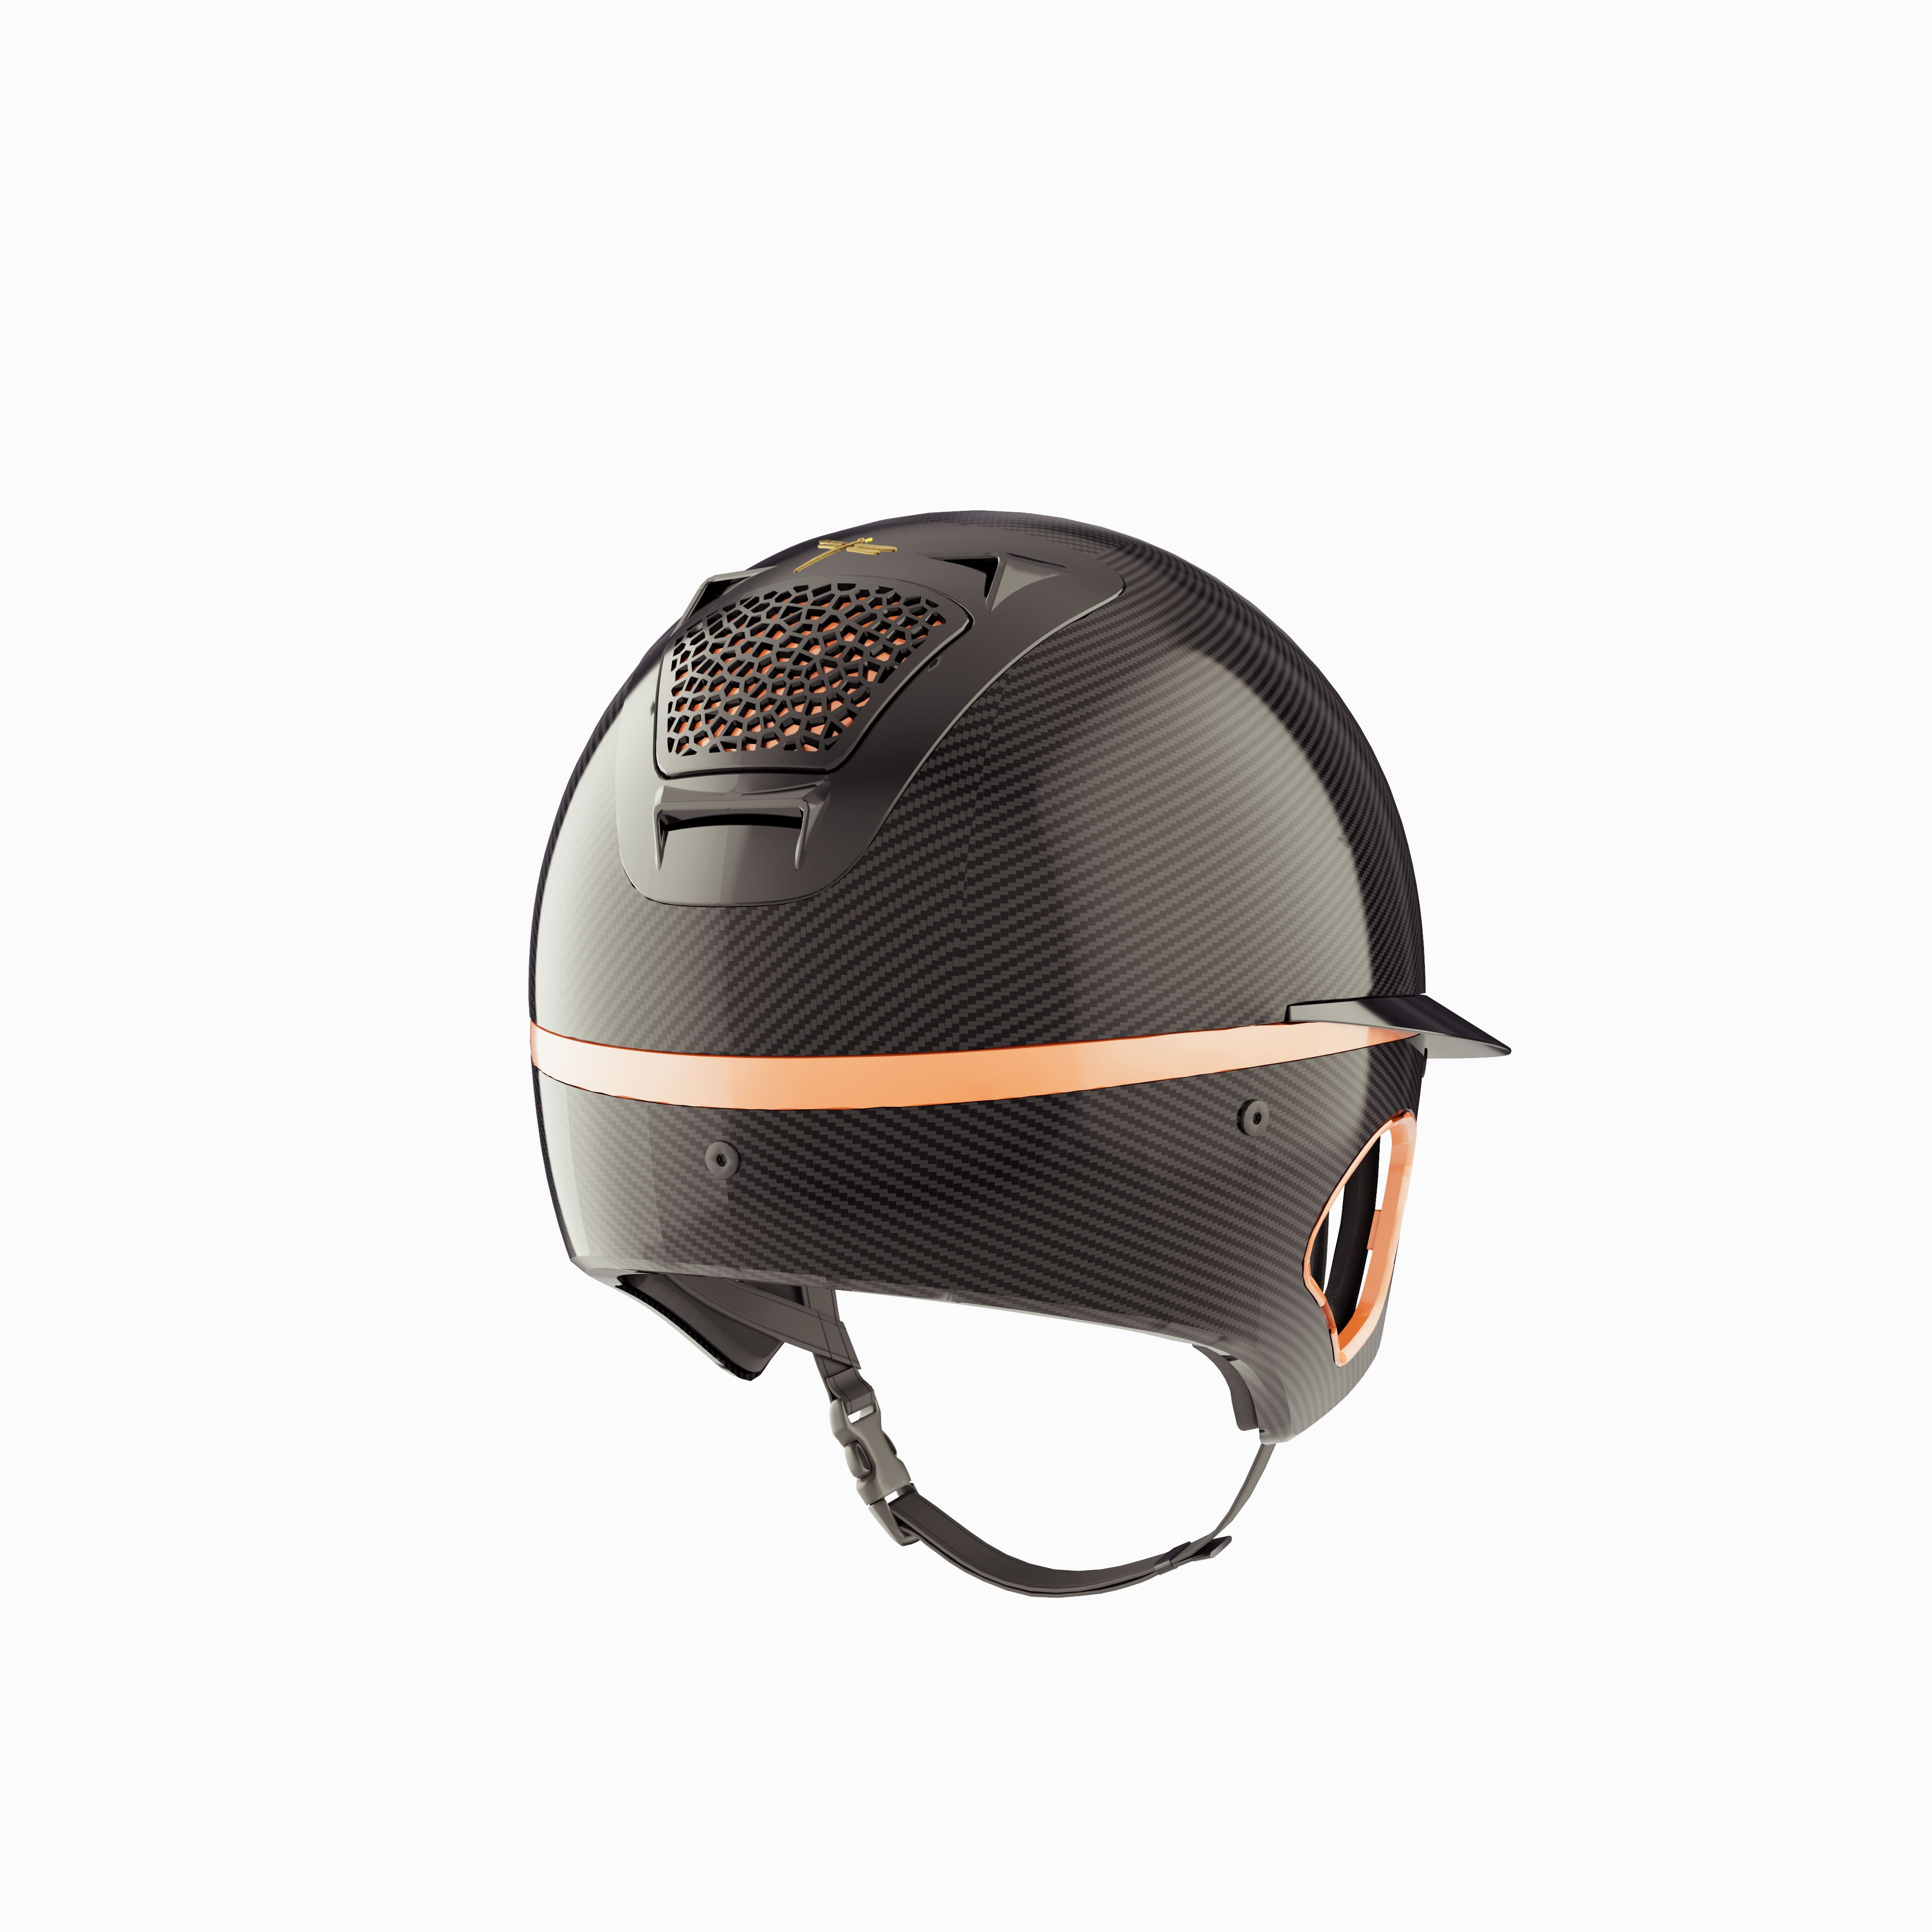 Voronoï Carbon Helmet With Temple Protection - Black/Bronze